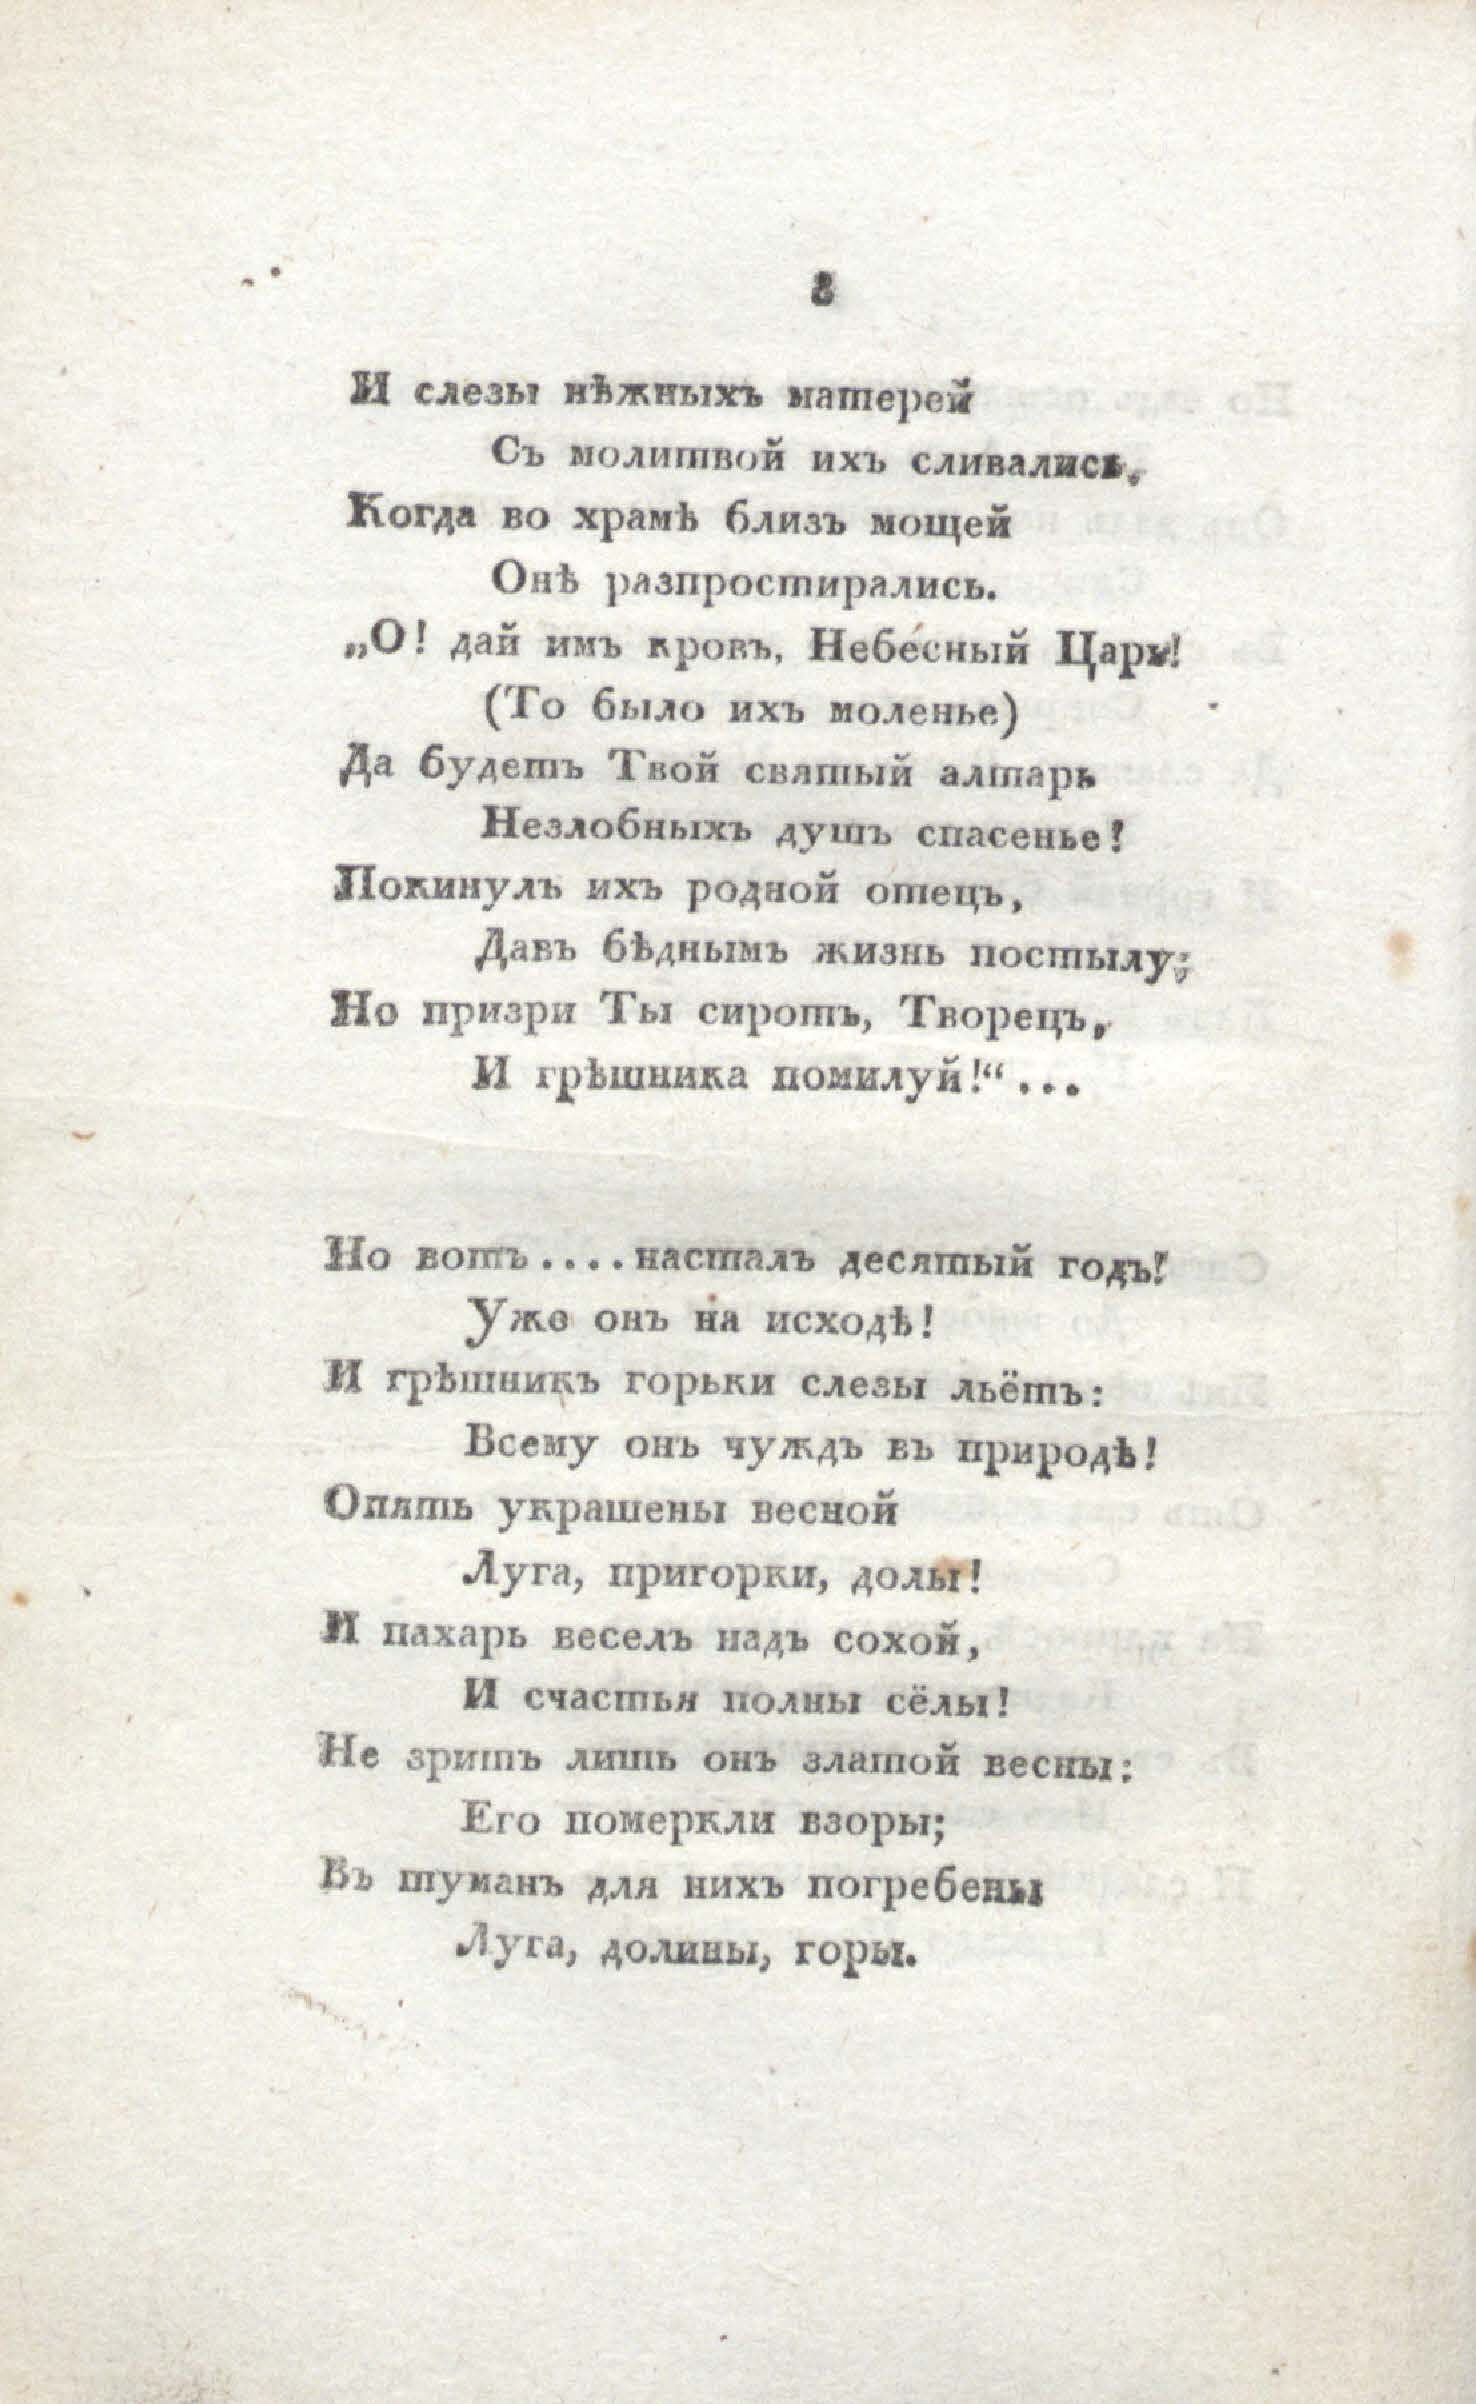 Двенадцать спящих дев (1817) | 18. (8) Main body of text